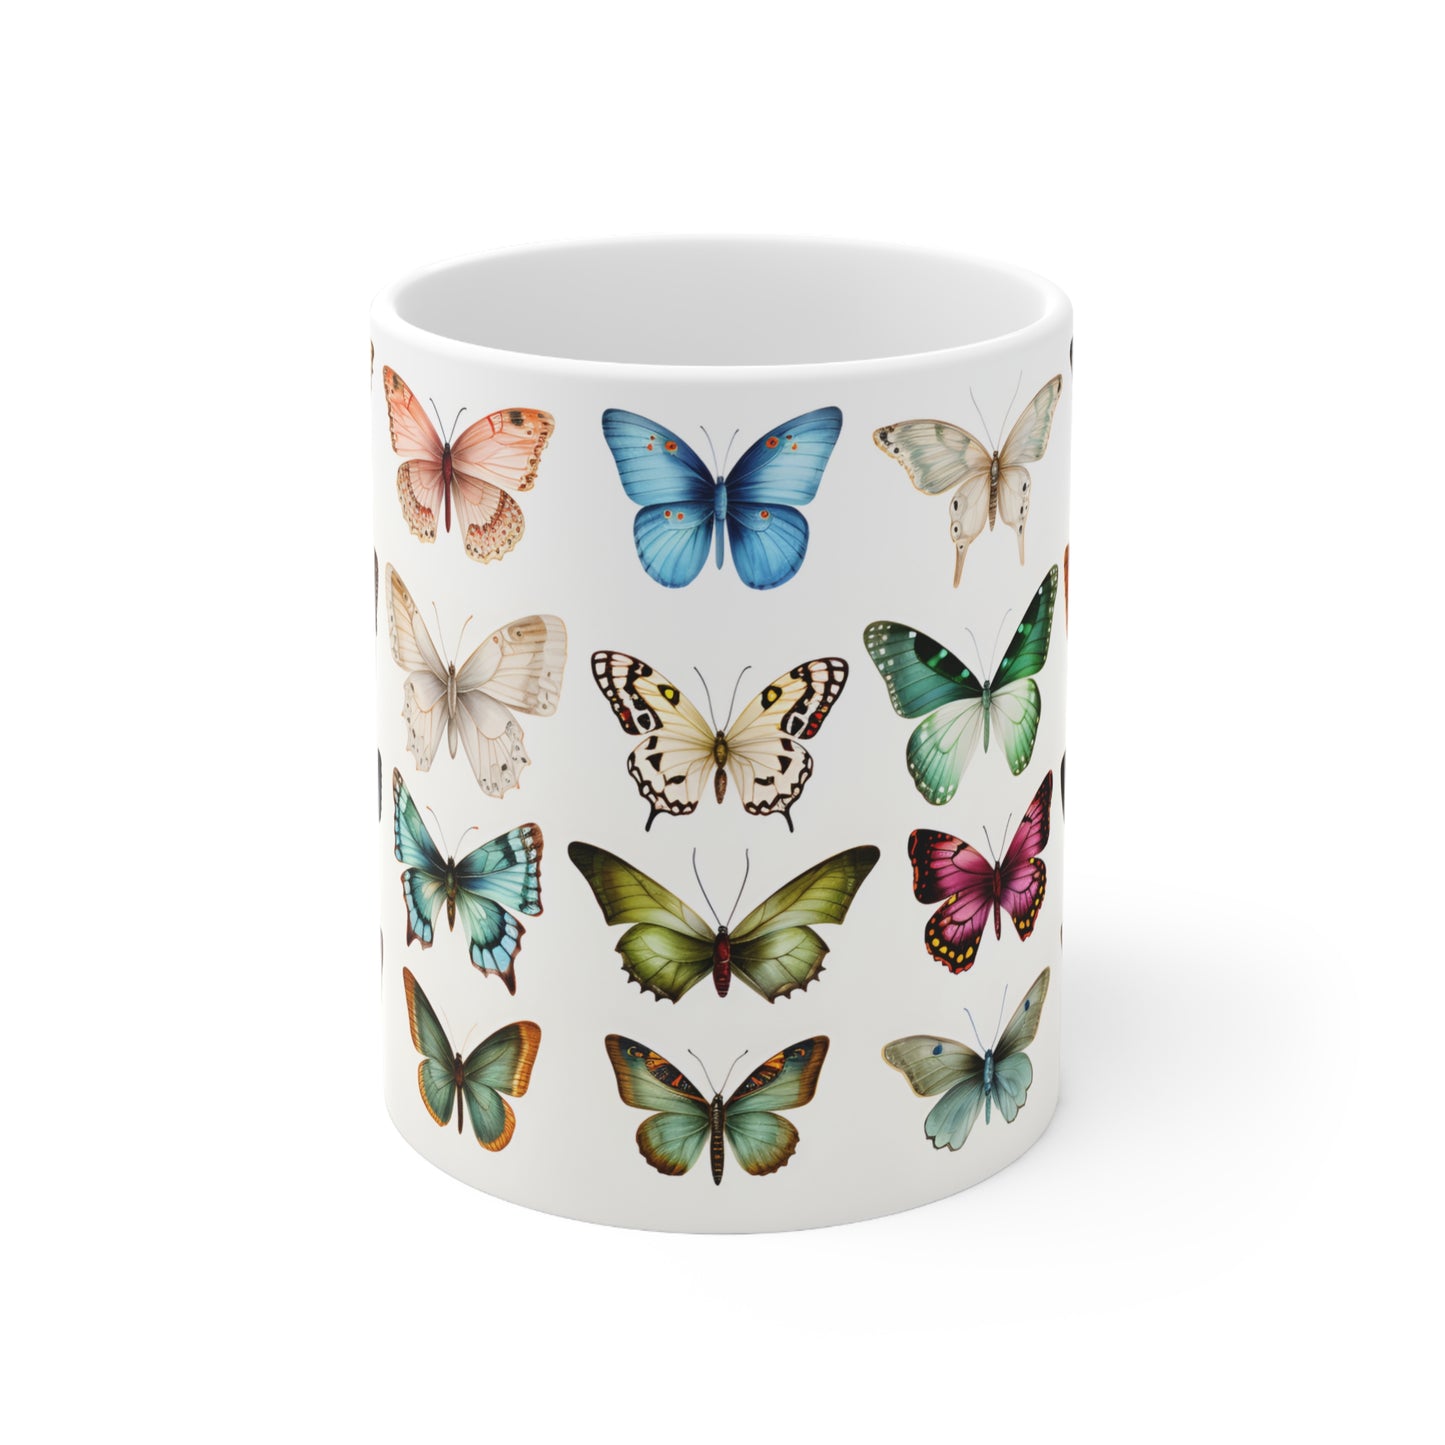 Butterfly Mug - 11pz Ceramic Mug